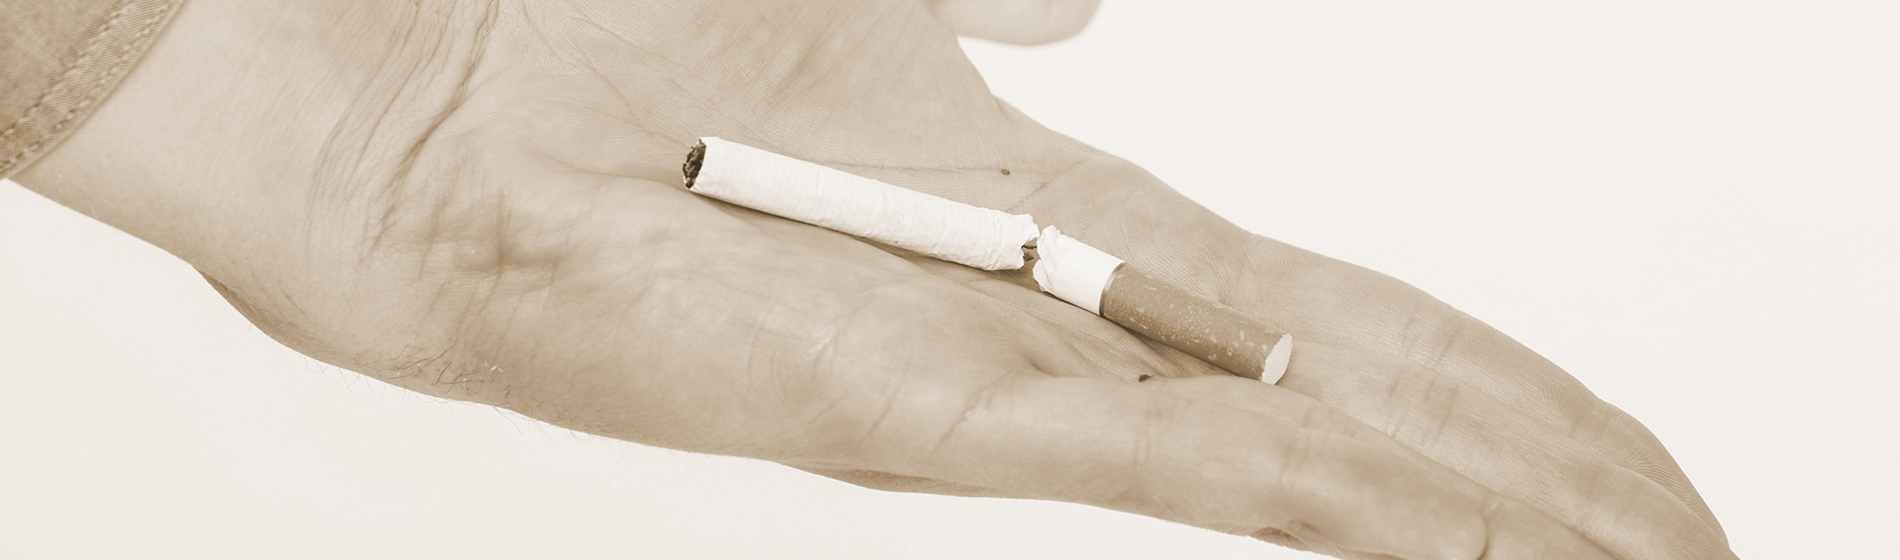 Medicament pour arreter de fumer sans ordonnance